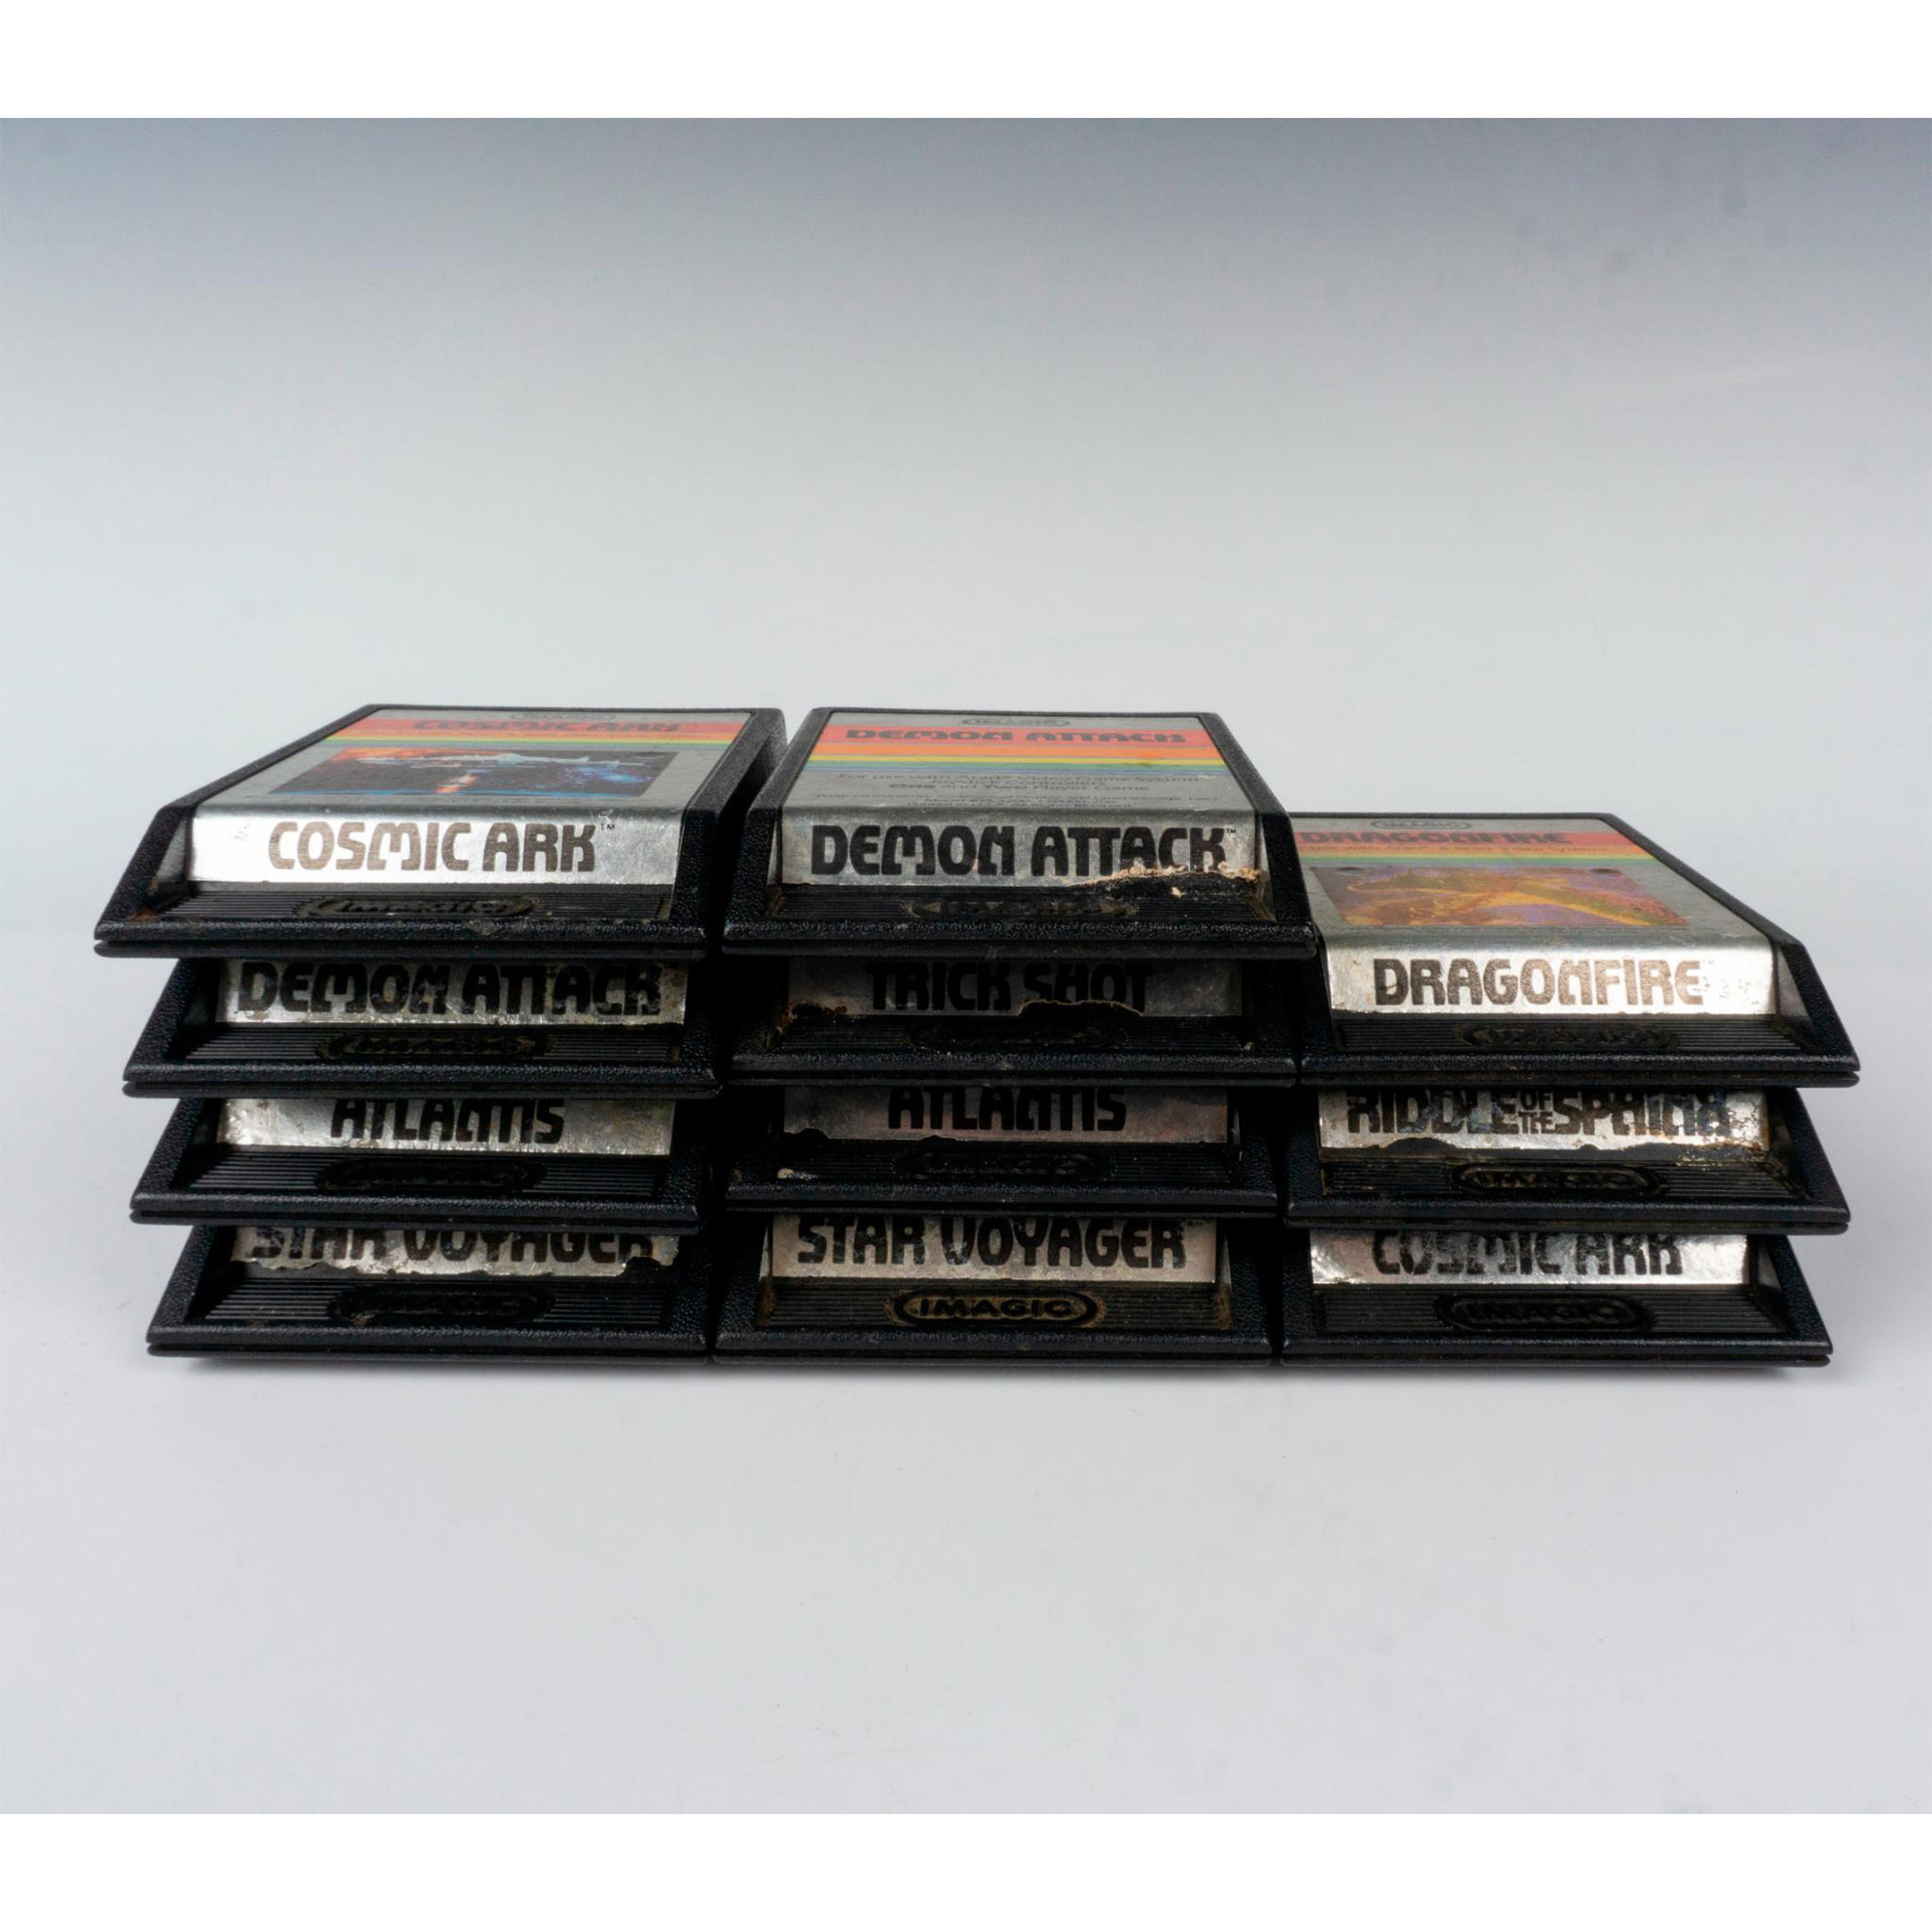 11 Assorted Atari Imagic Video Games Cartridges - Image 3 of 3